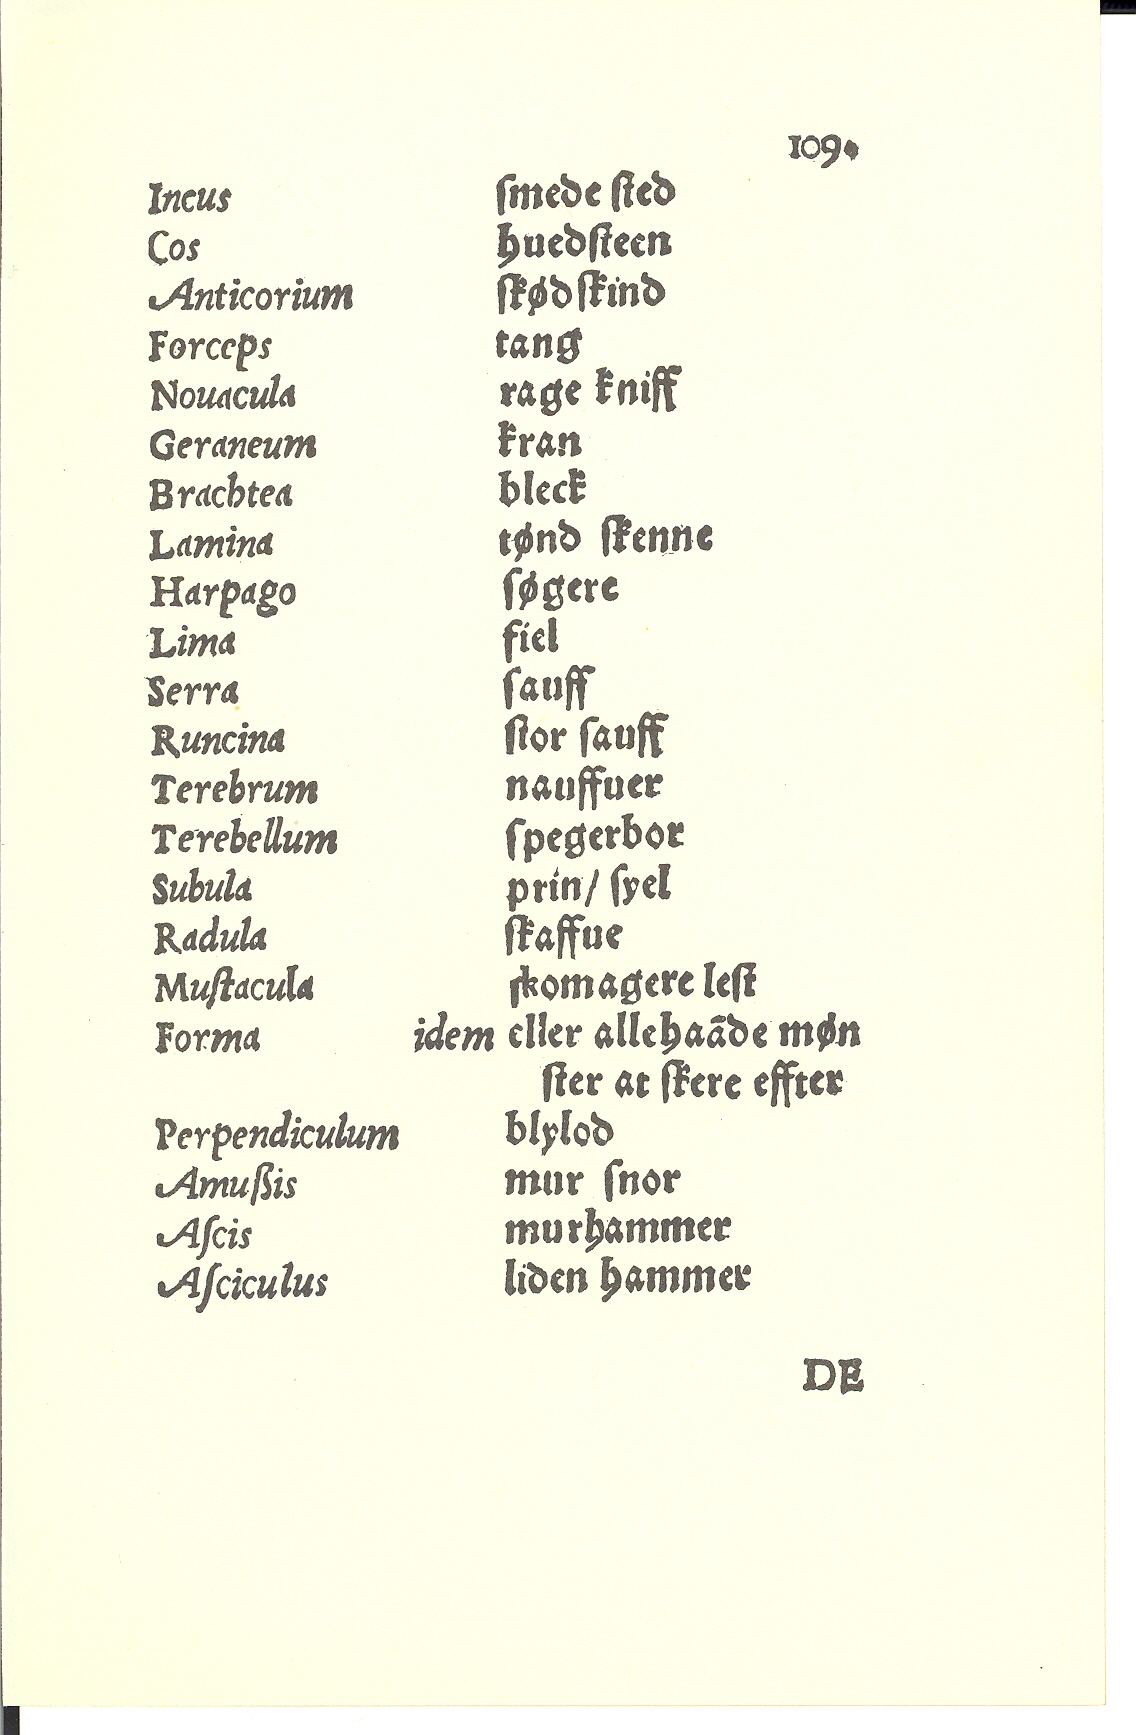 Tursen 1561, Side: 109